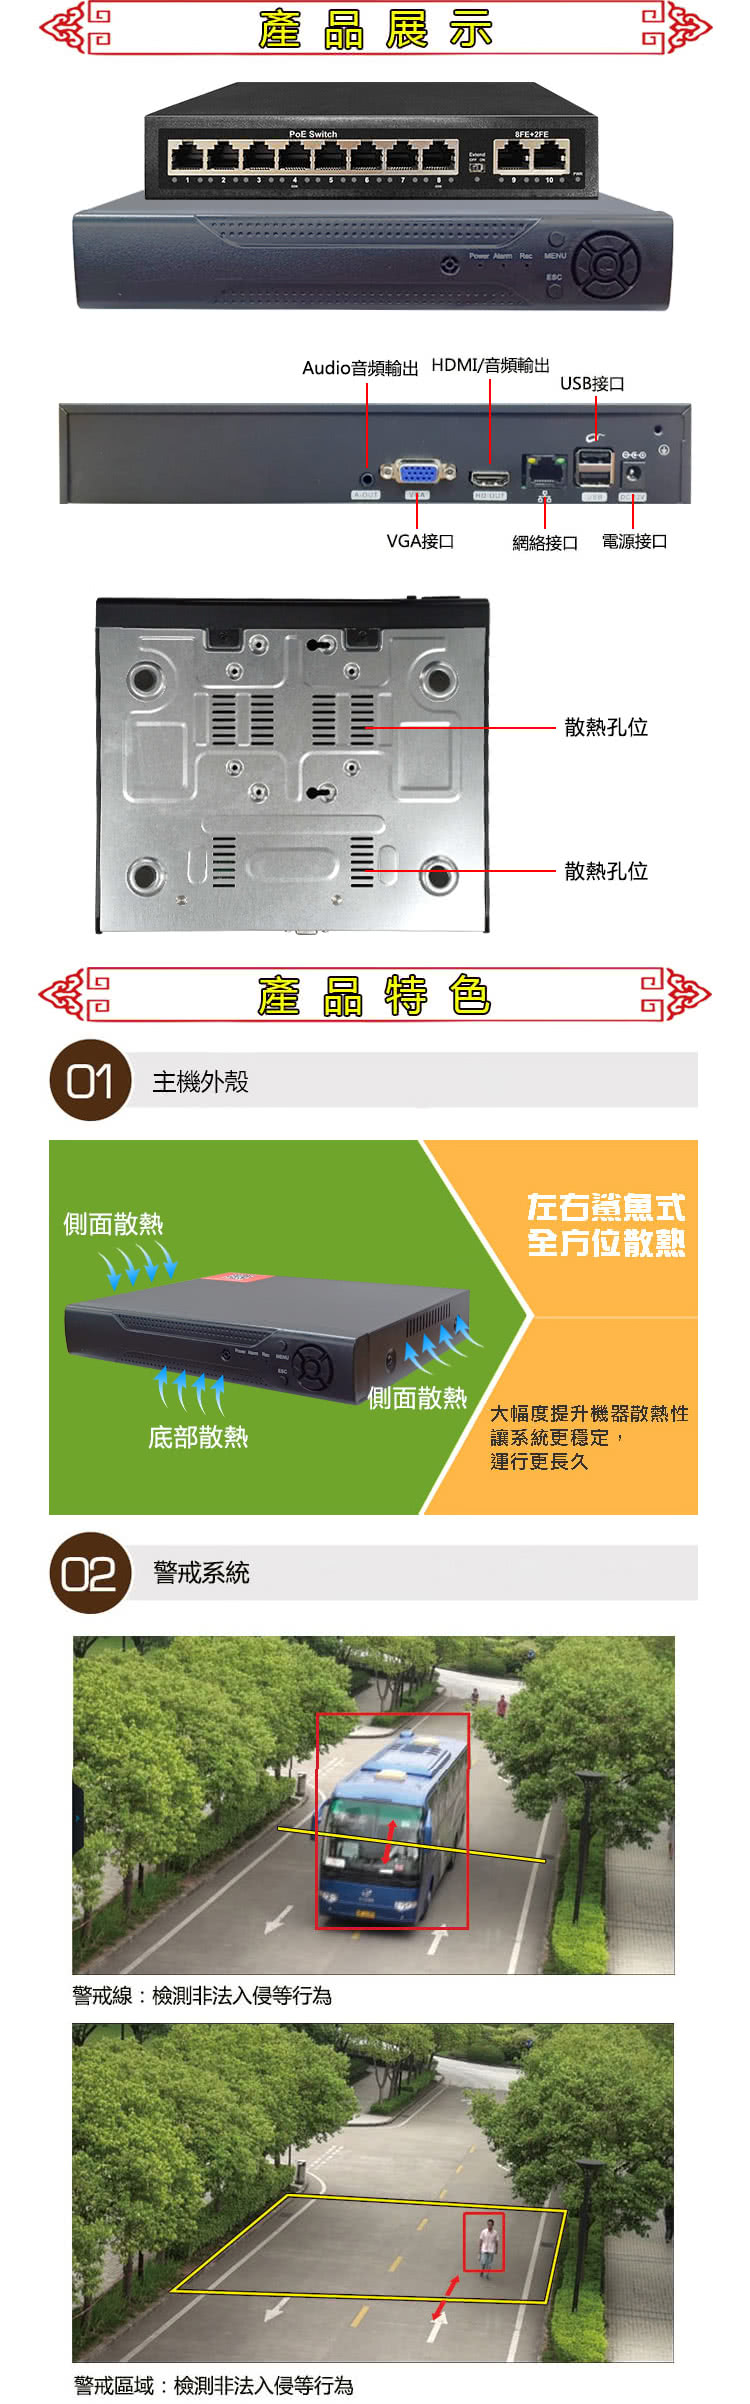 台灣霓虹 4路400萬標準POE網路混搭型帶聲音雙光源監控套